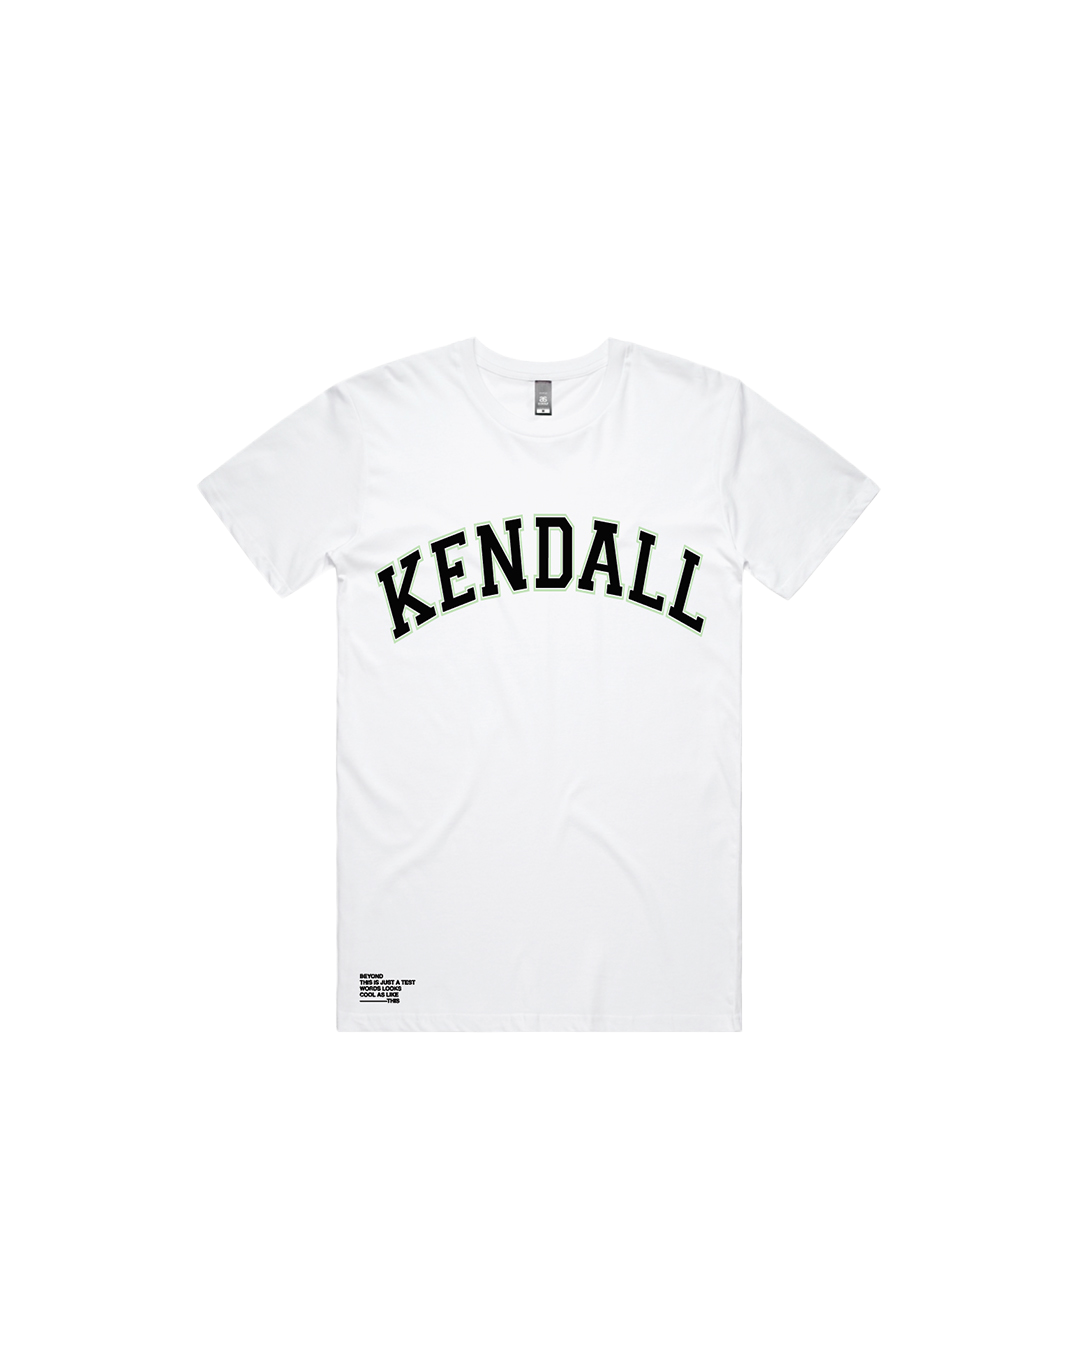 Kendall T-Shirt